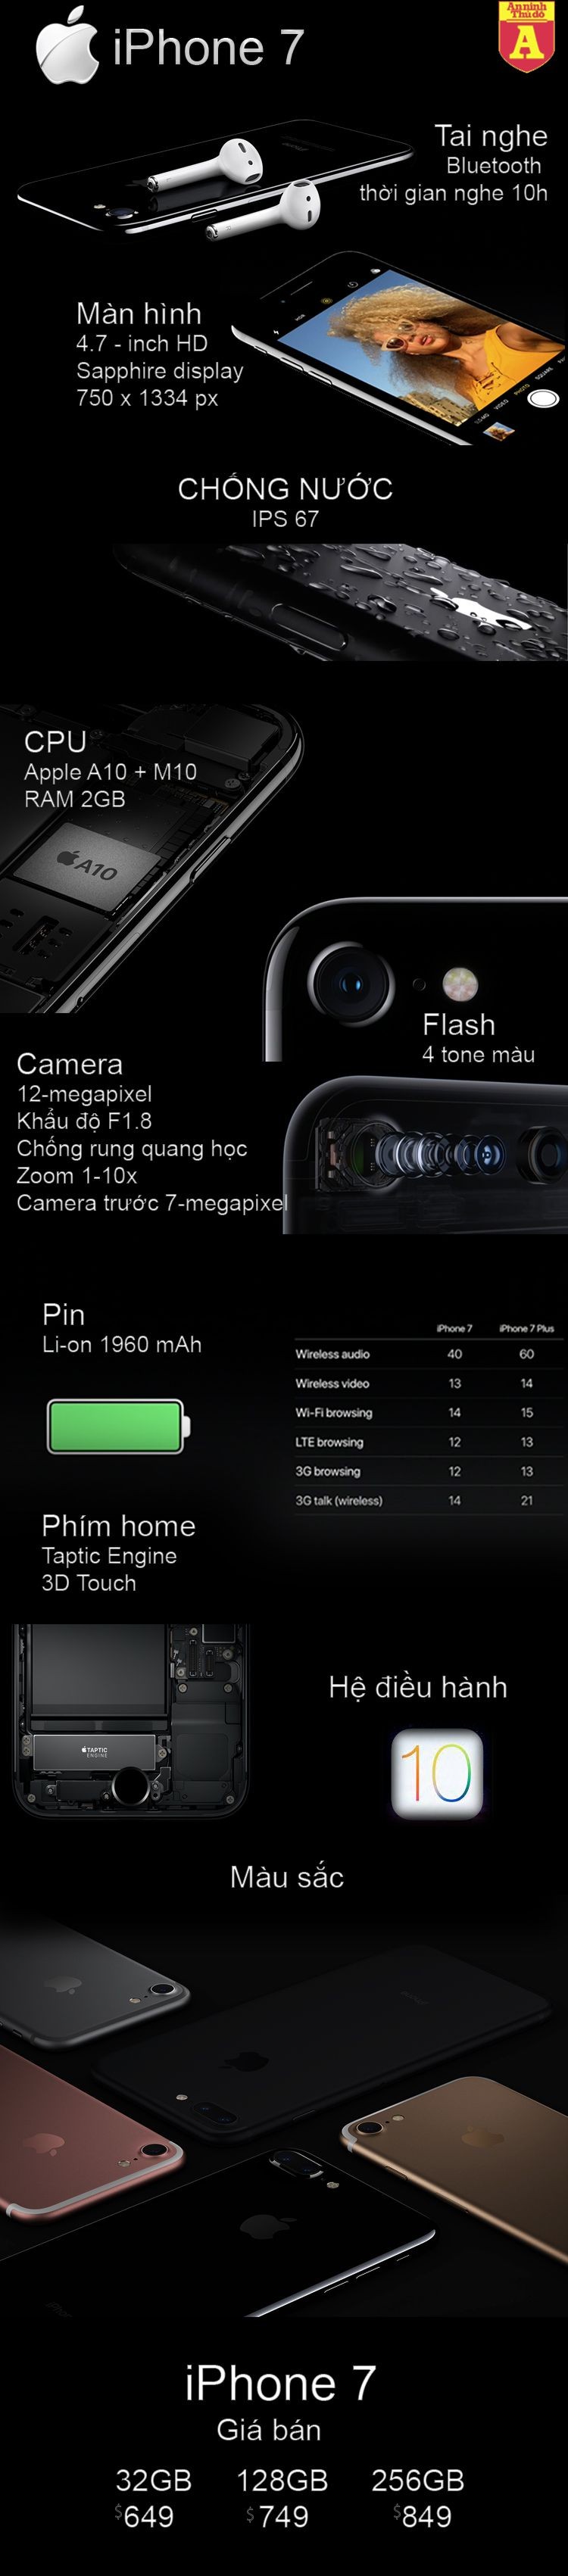 [Infographic] iPhone 7– Nữ hoàng của làng công nghệ di động ảnh 1